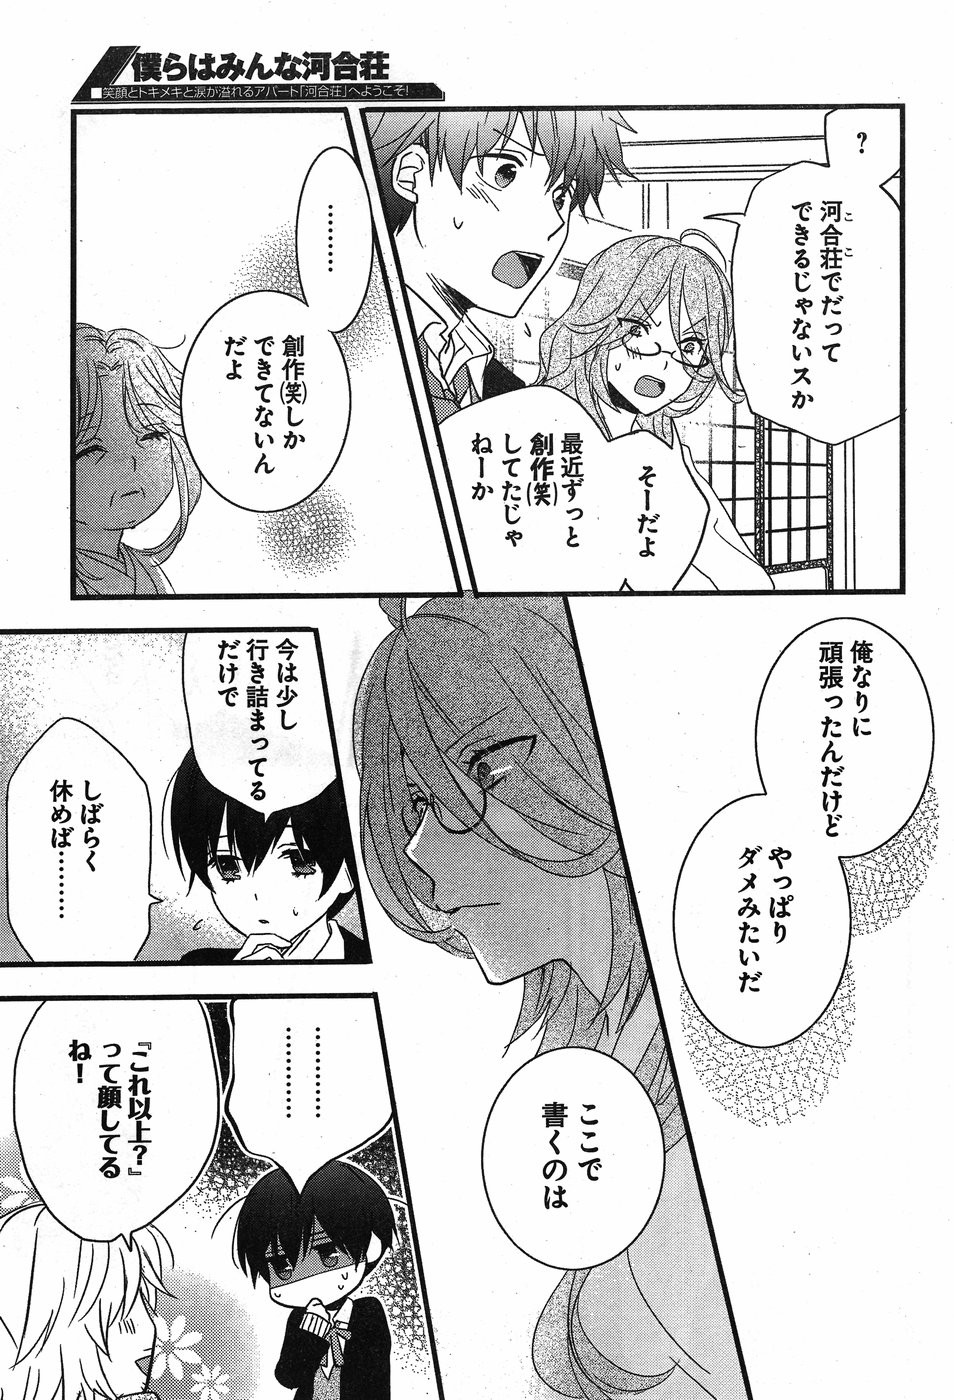 Bokura wa Minna Kawaisou - Chapter 88 - Page 3